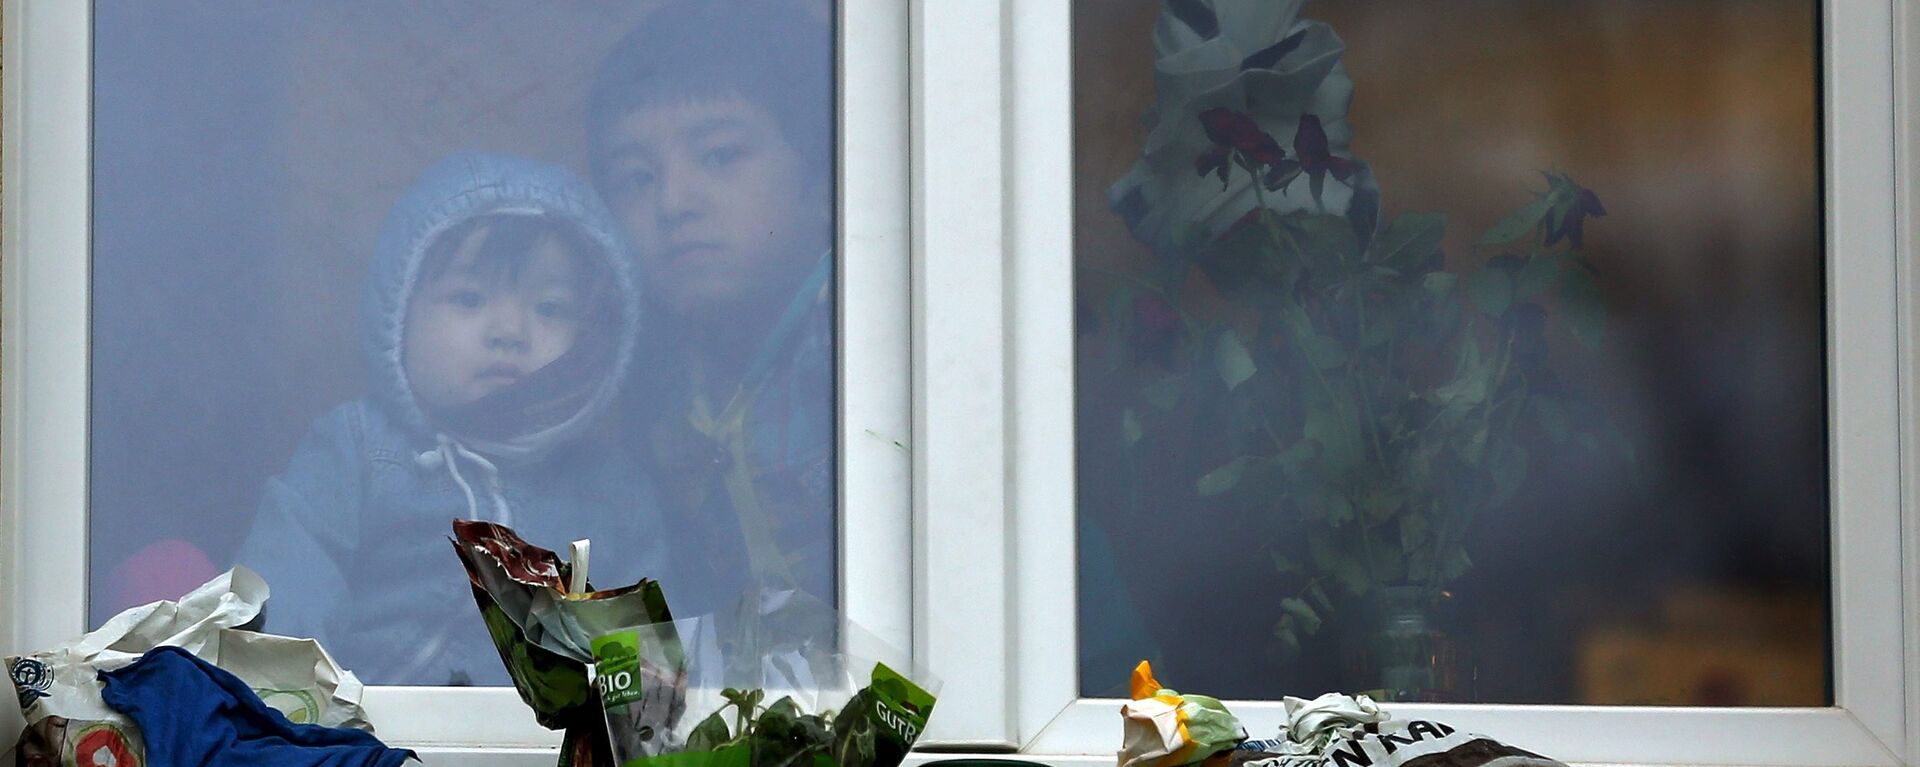 Дети-беженцы смотрят из окна - Sputnik Латвия, 1920, 11.08.2021